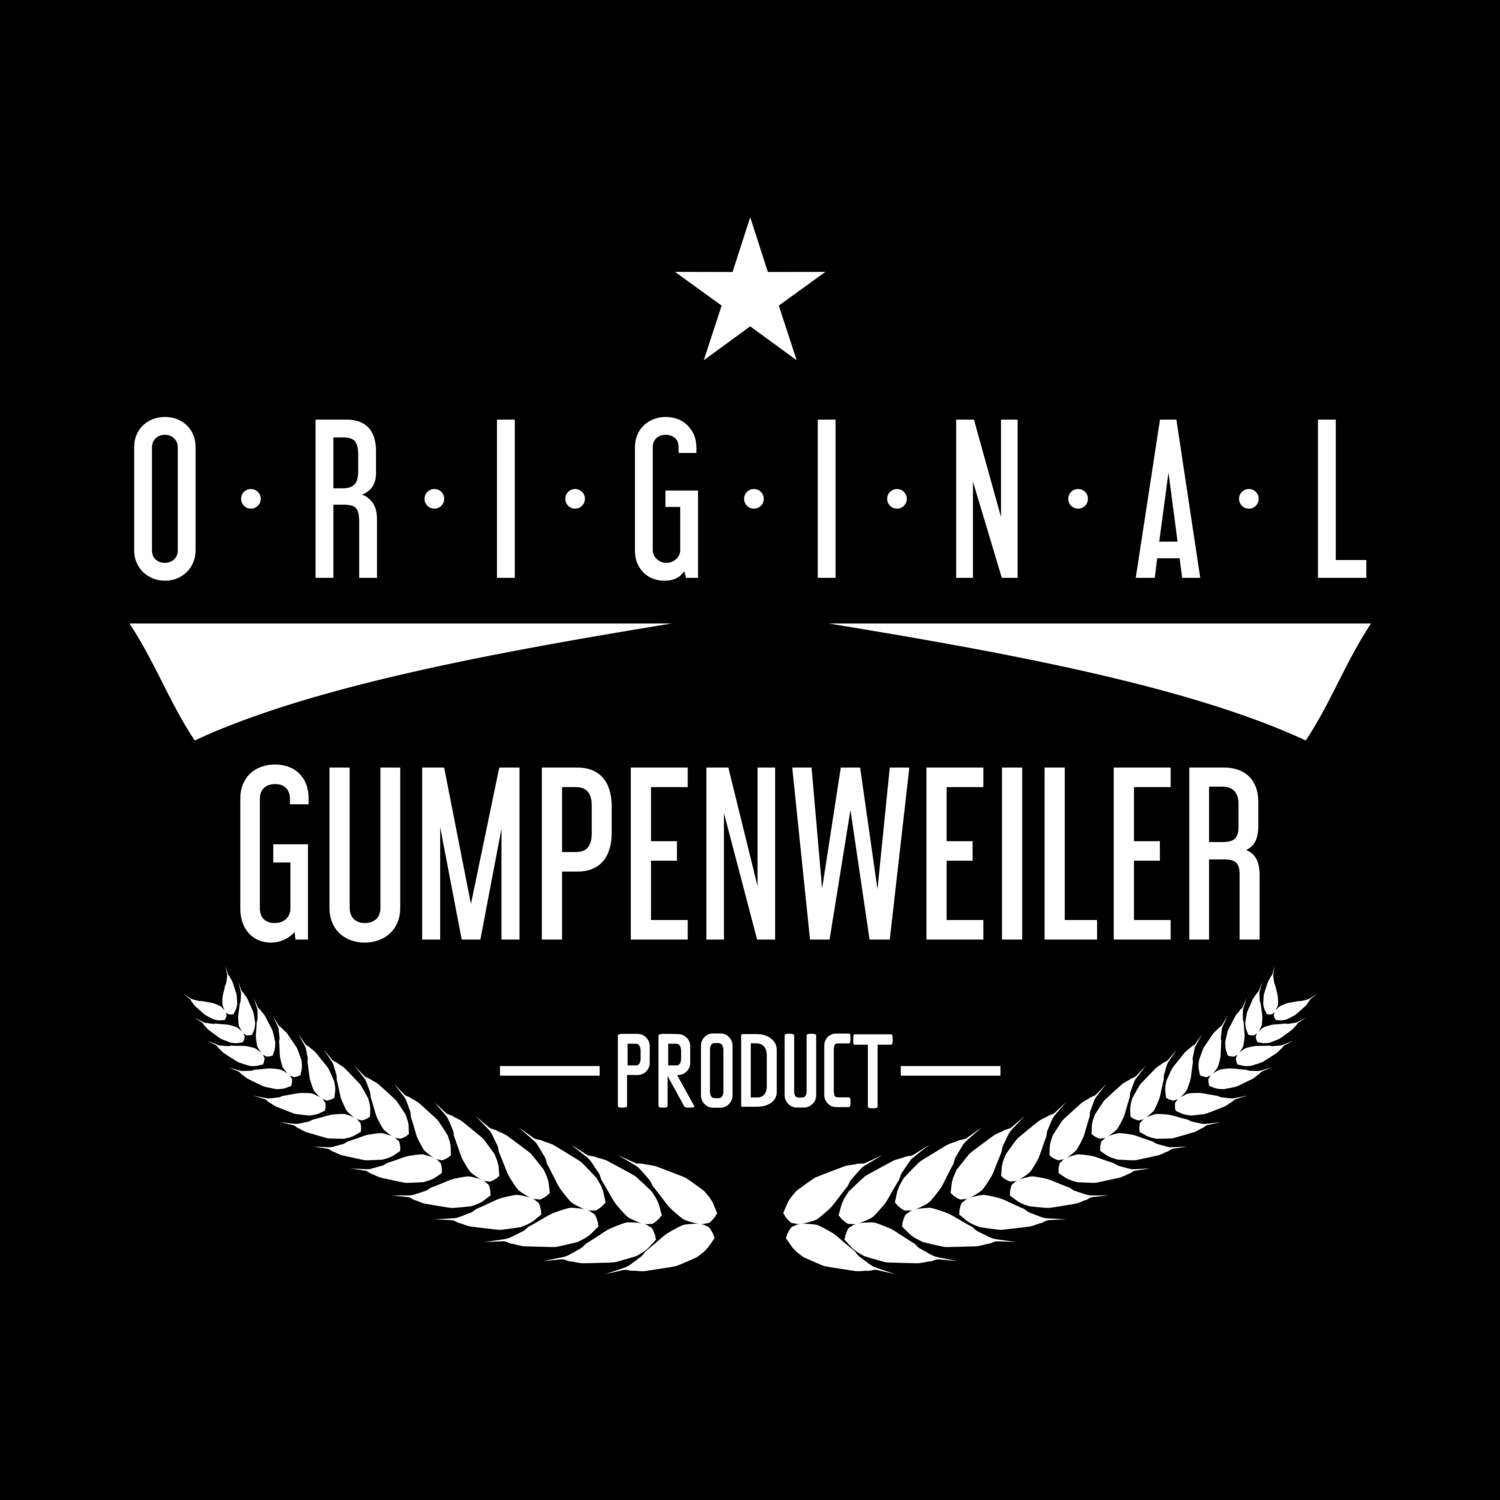 Gumpenweiler T-Shirt »Original Product«